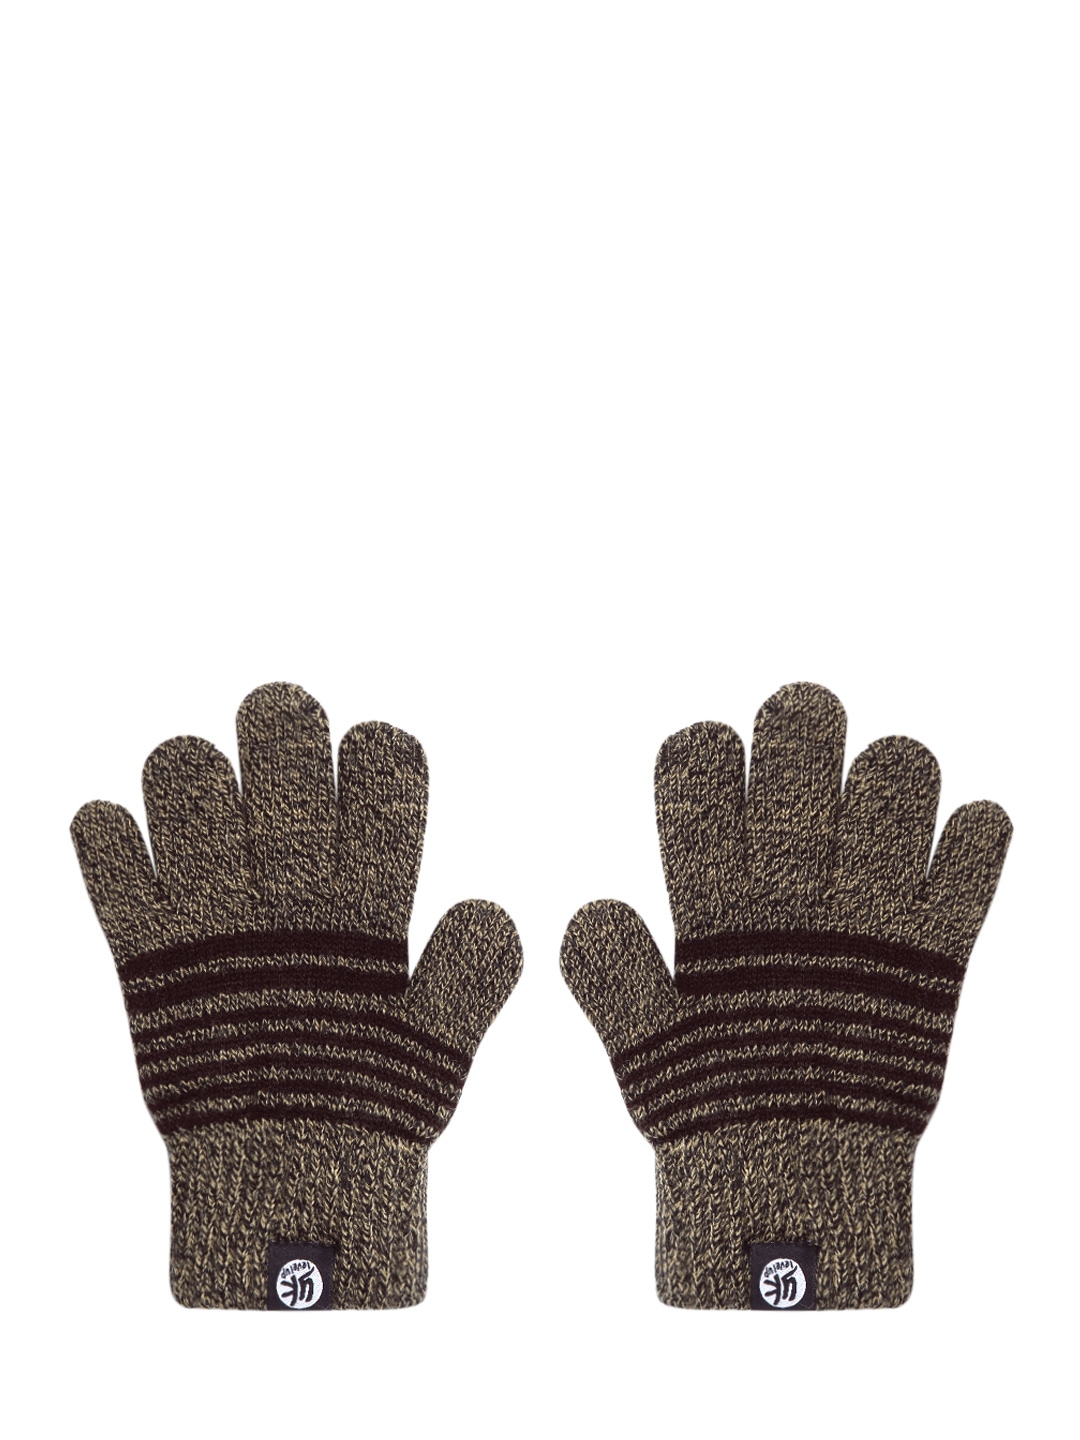 

YK Kids Brown & Beige Striped Hand Gloves